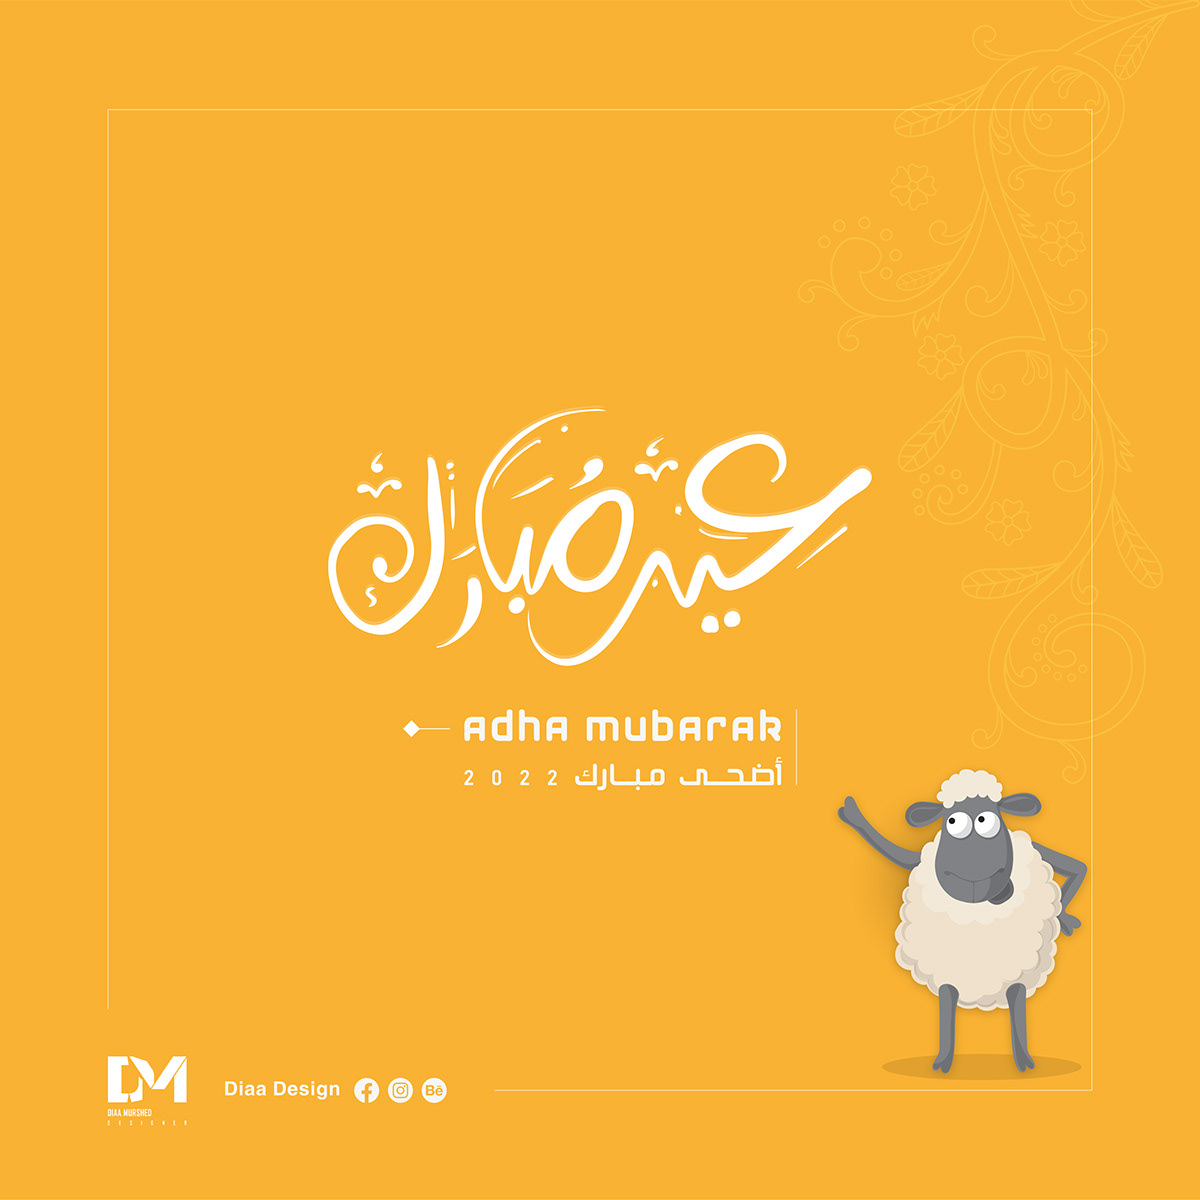 Adha Mubarak adobe illustrator Eid poster social media Social media post عيد الأضحى عيد سعيد  عيد مبارك